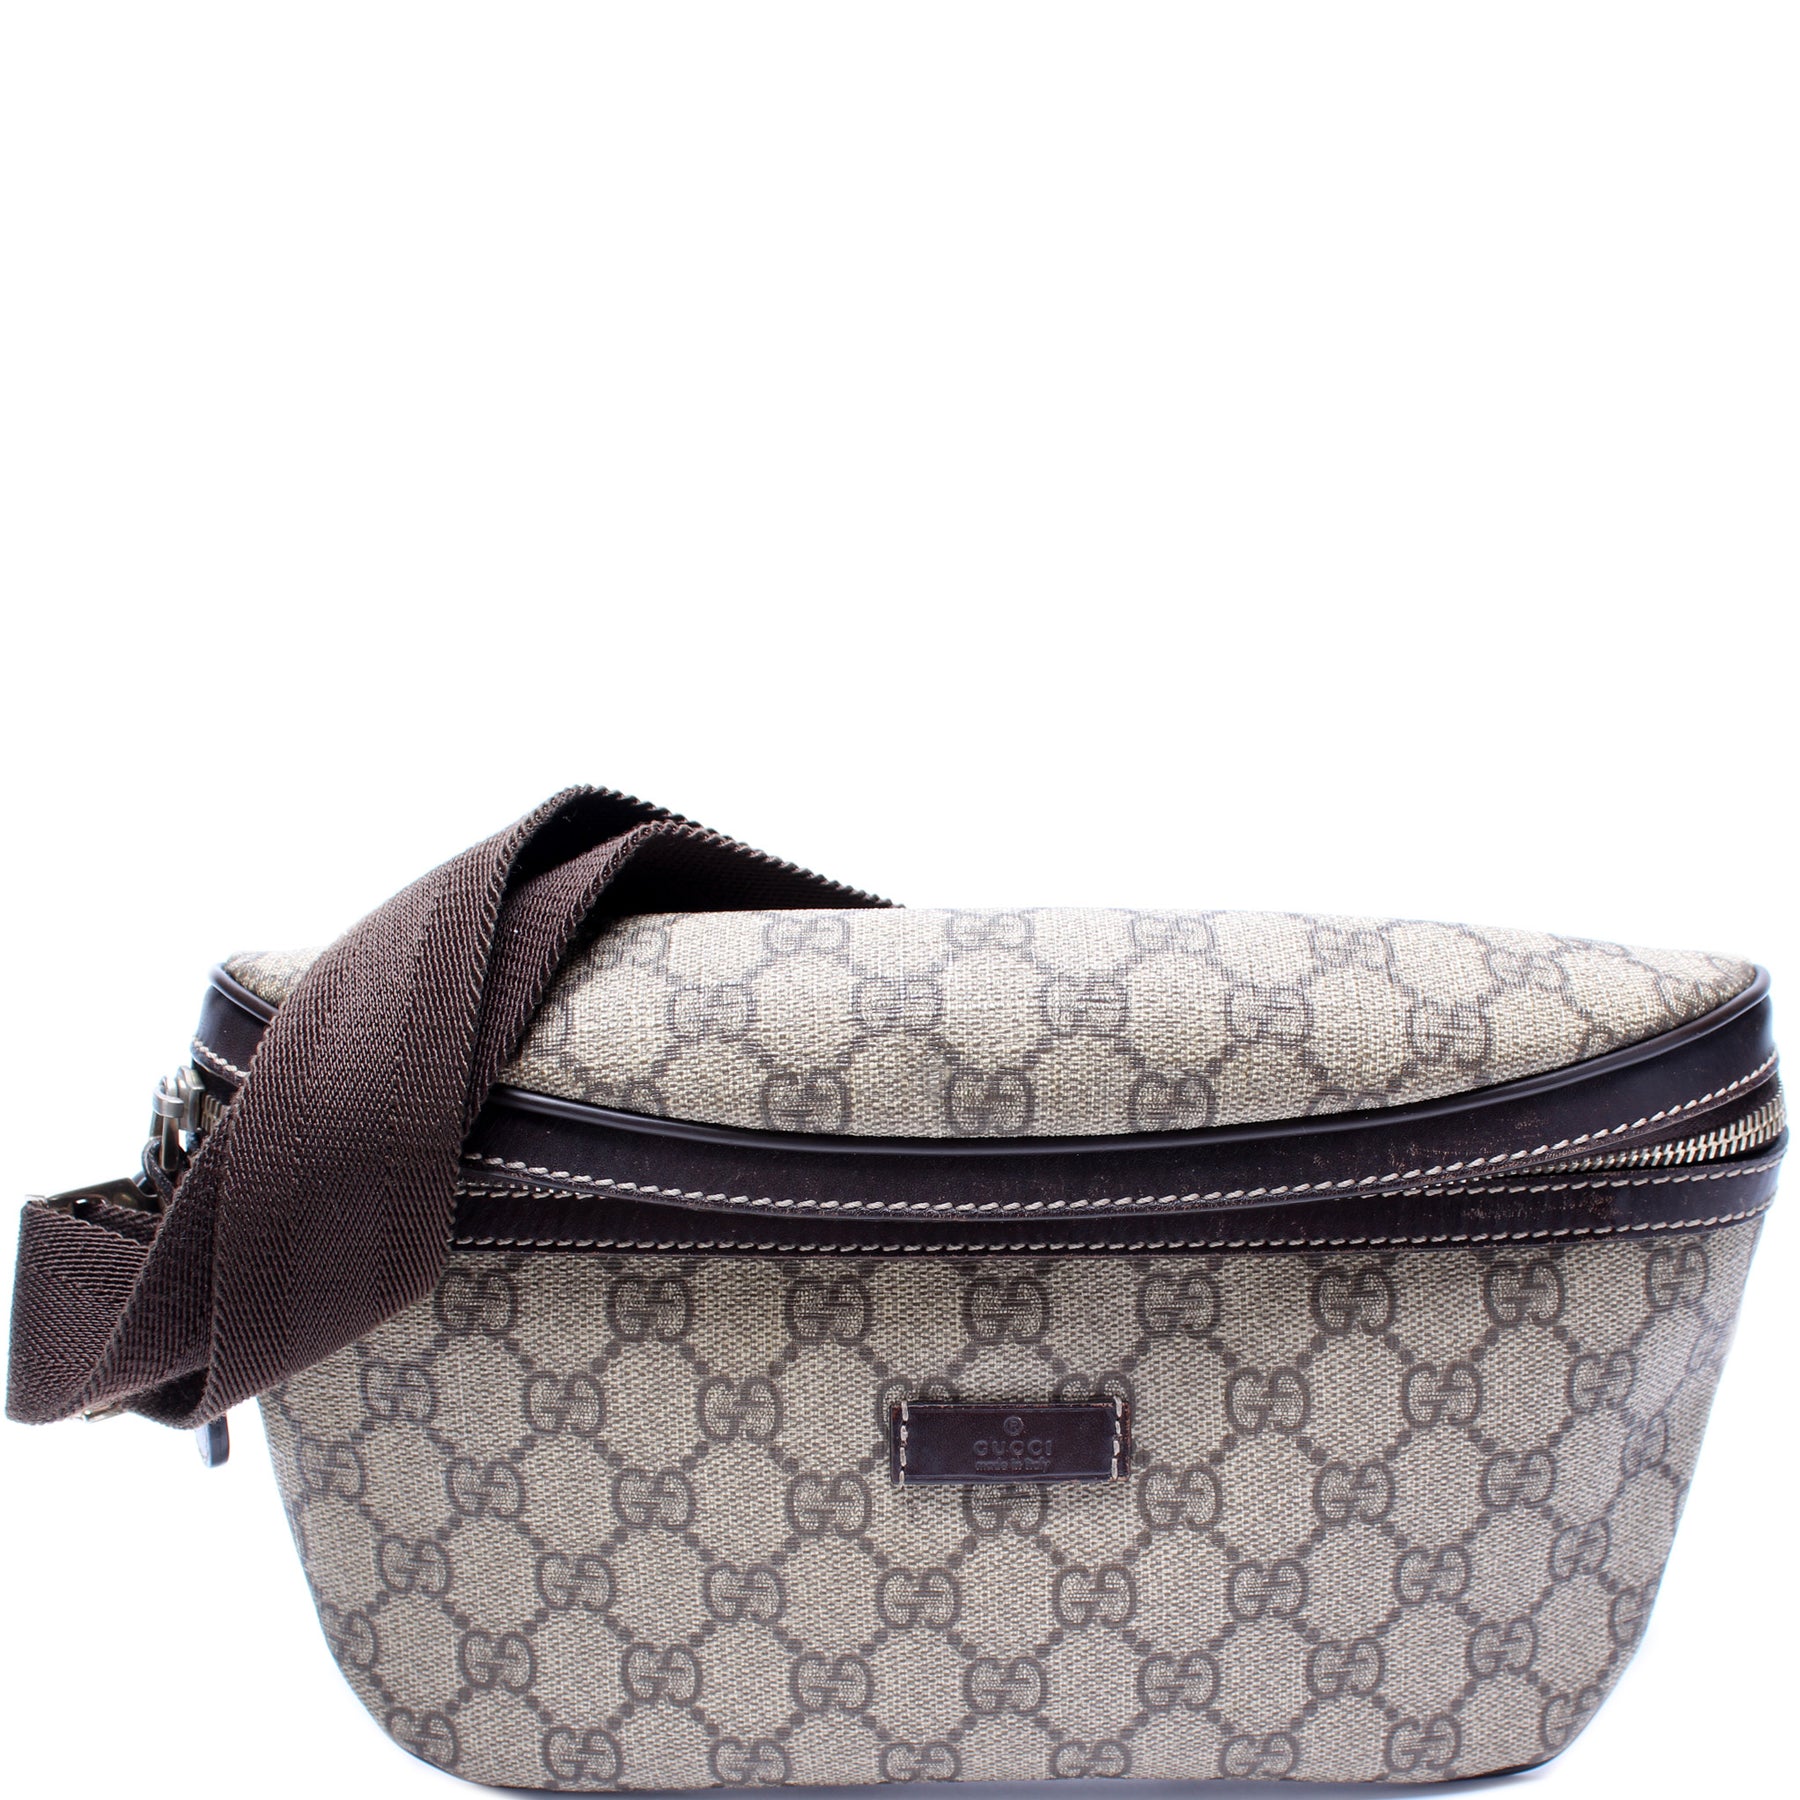 Gg supreme canvas belt bag - Gucci - Men | Luisaviaroma